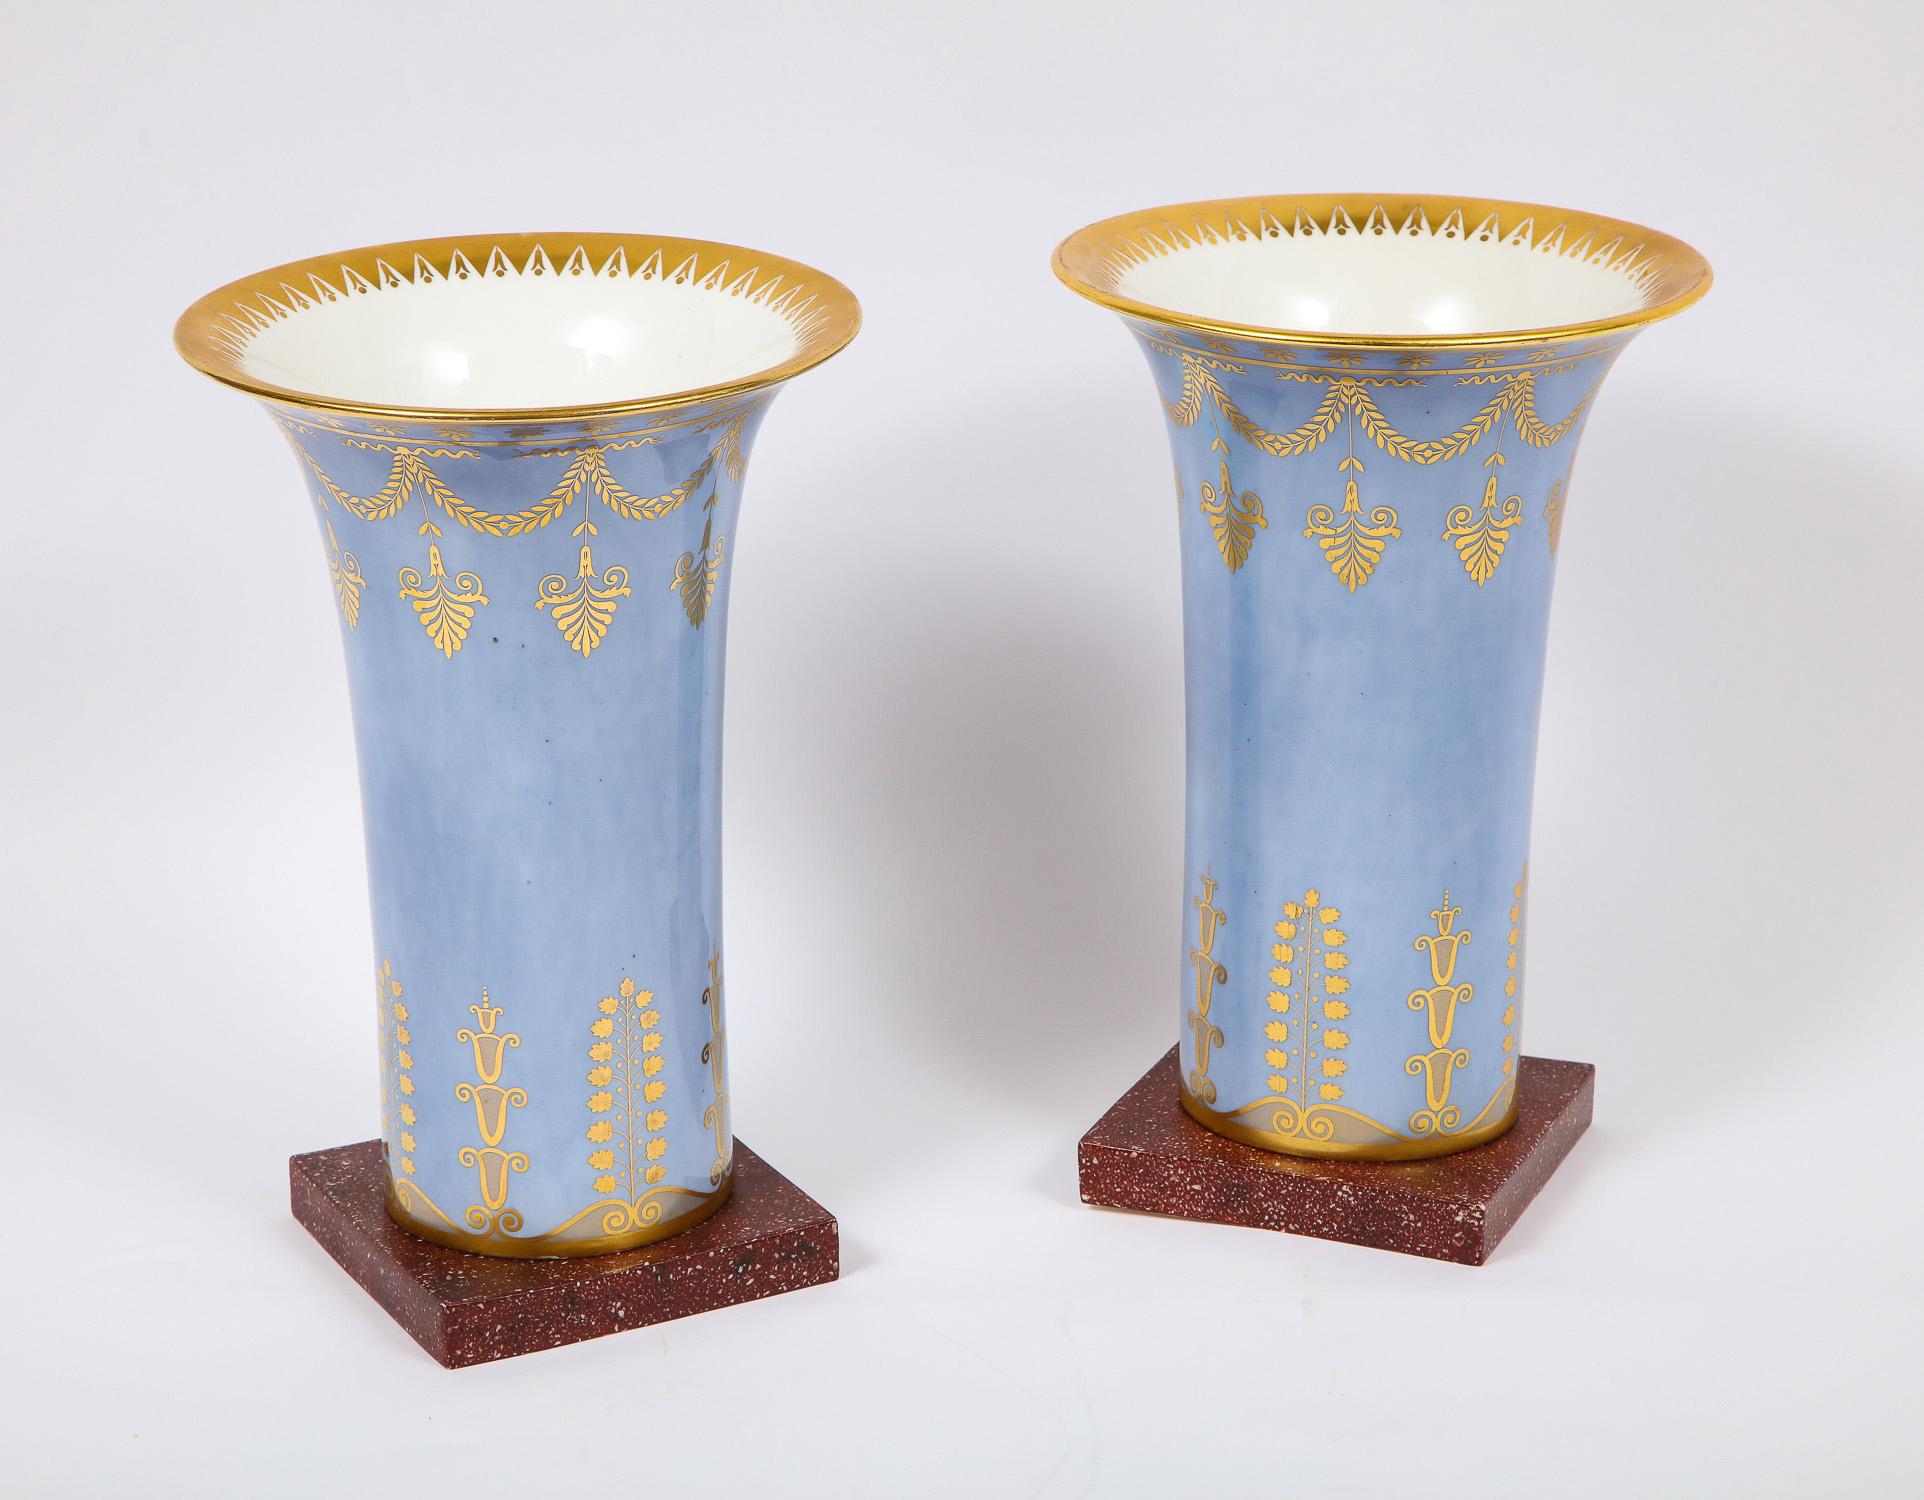 Une paire très inhabituelle et assez grande de vases d'époque Empire en porcelaine de Sèvres bleu céleste pâle et faux porphyre. Chaque vase est peint à la main de manière complexe avec des détails méticuleux et est en outre orné d'une décoration